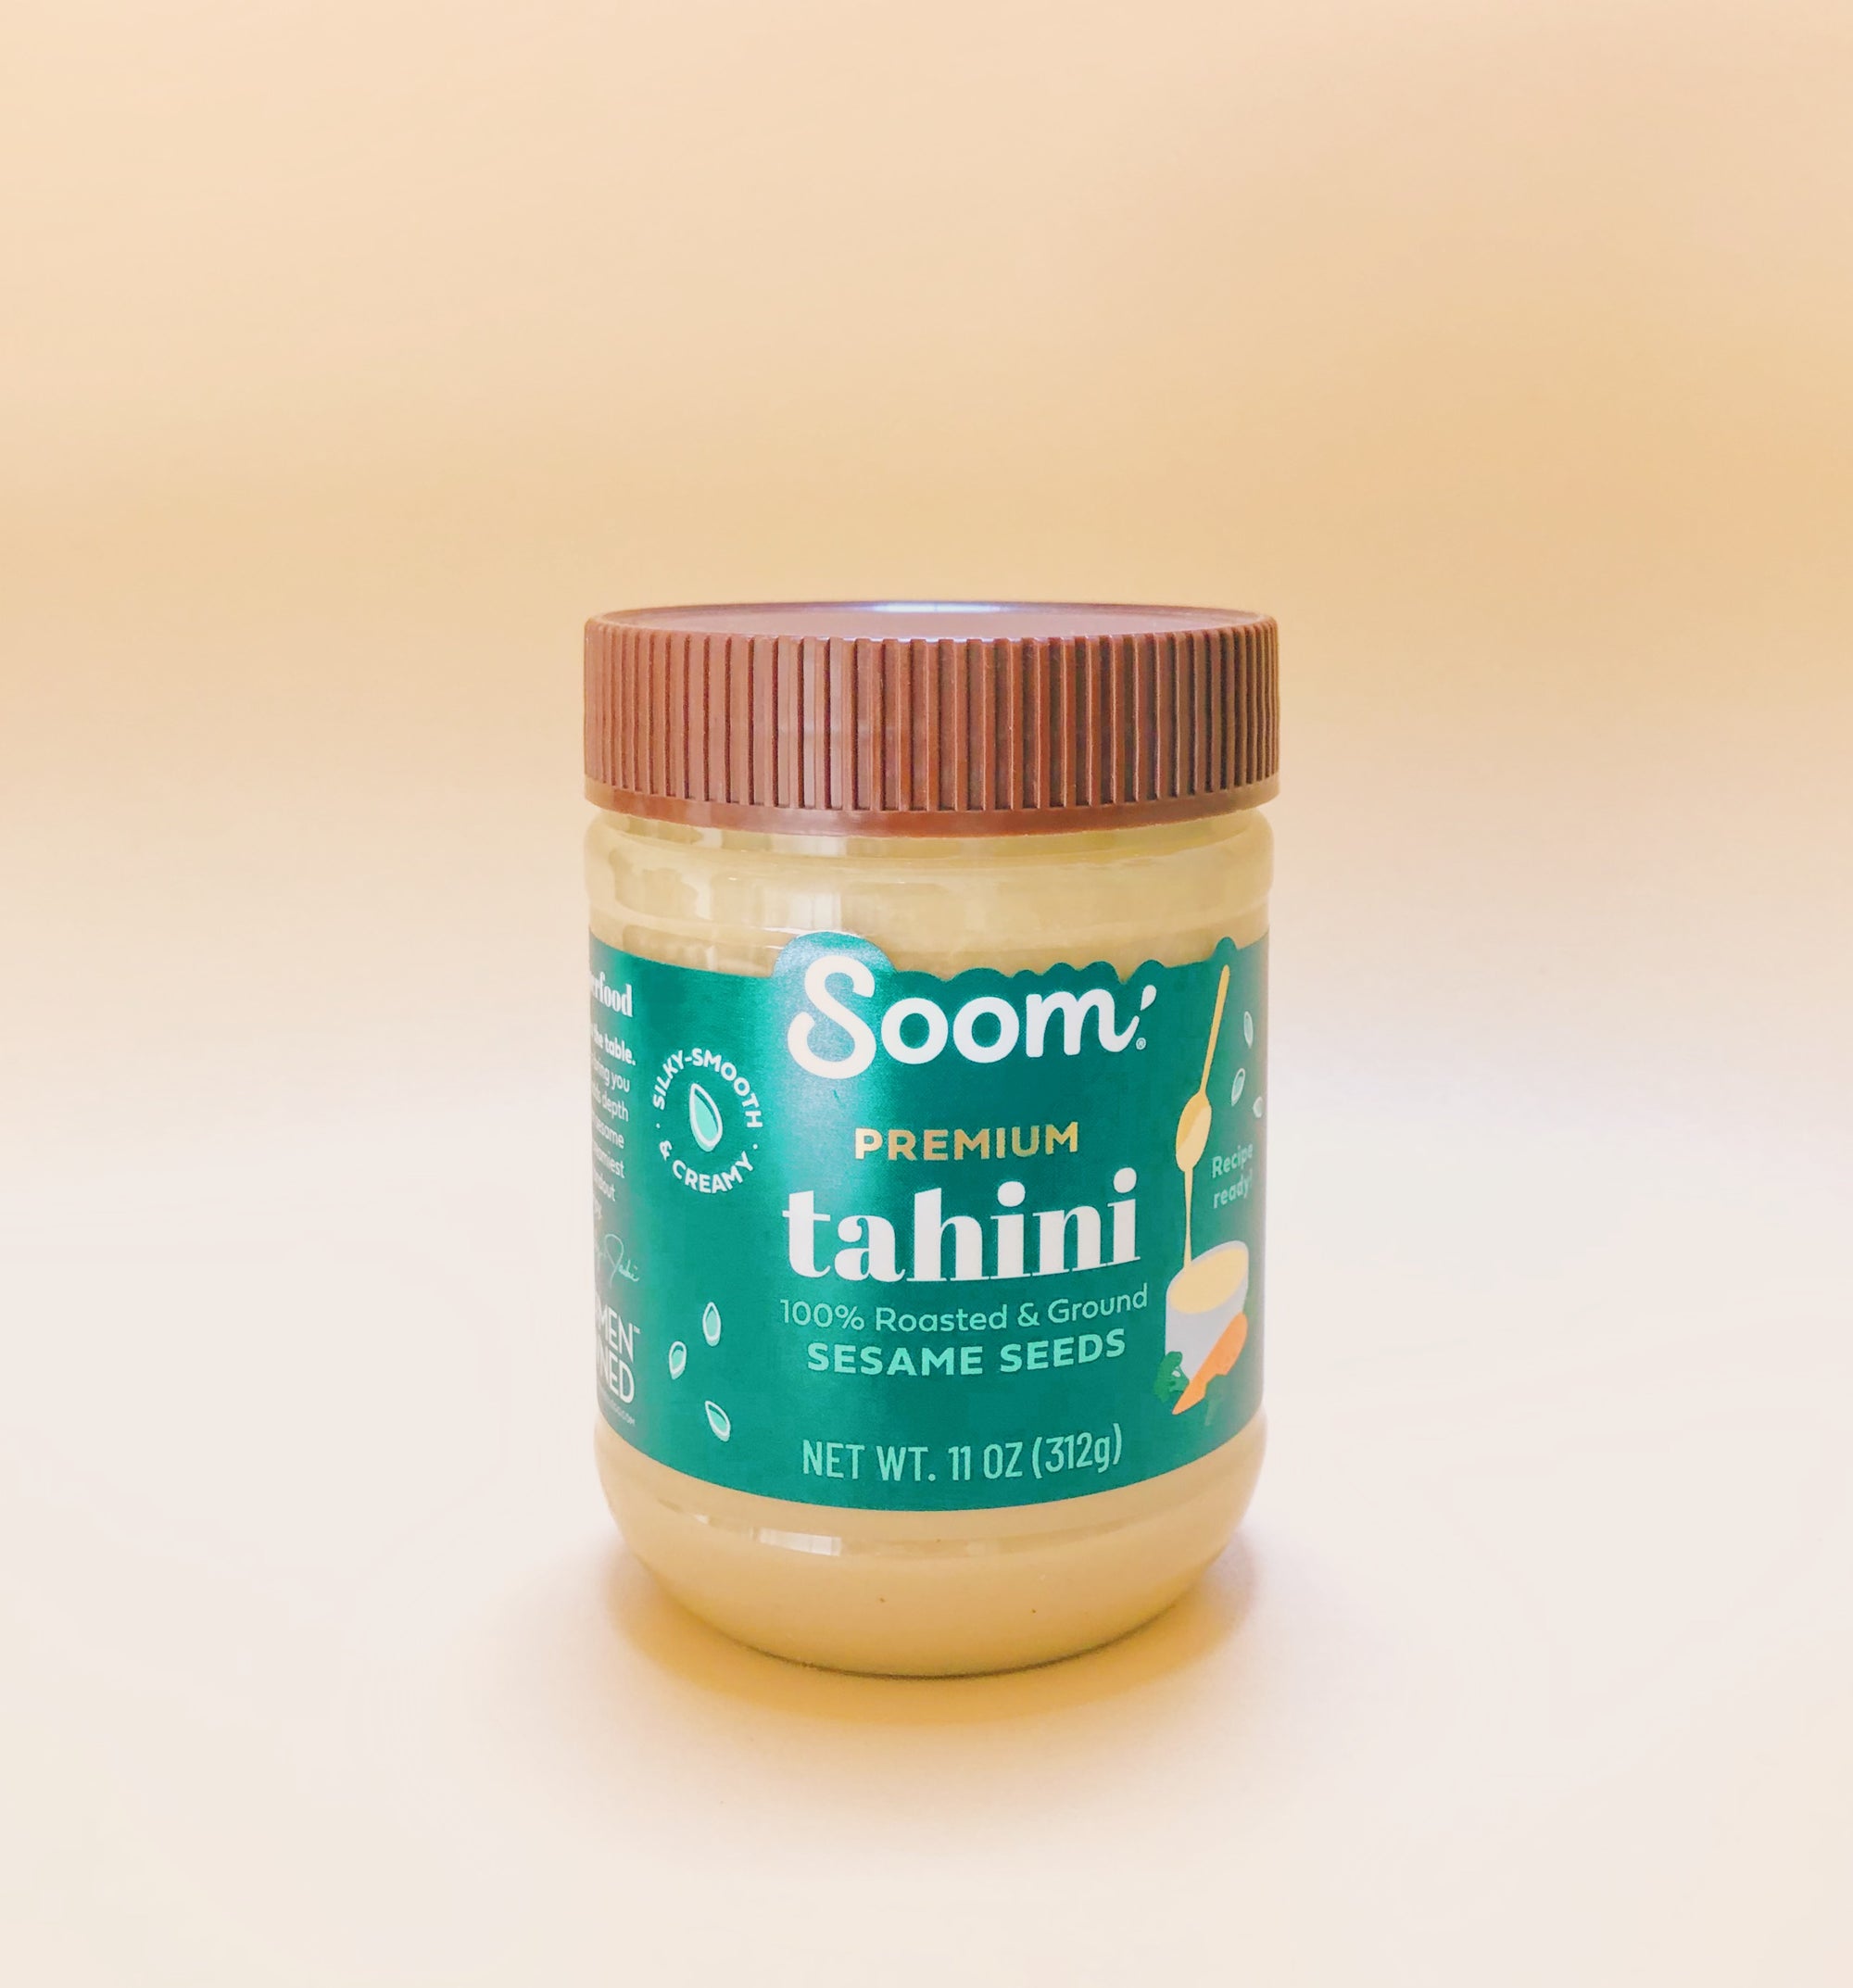 Premium Tahinii